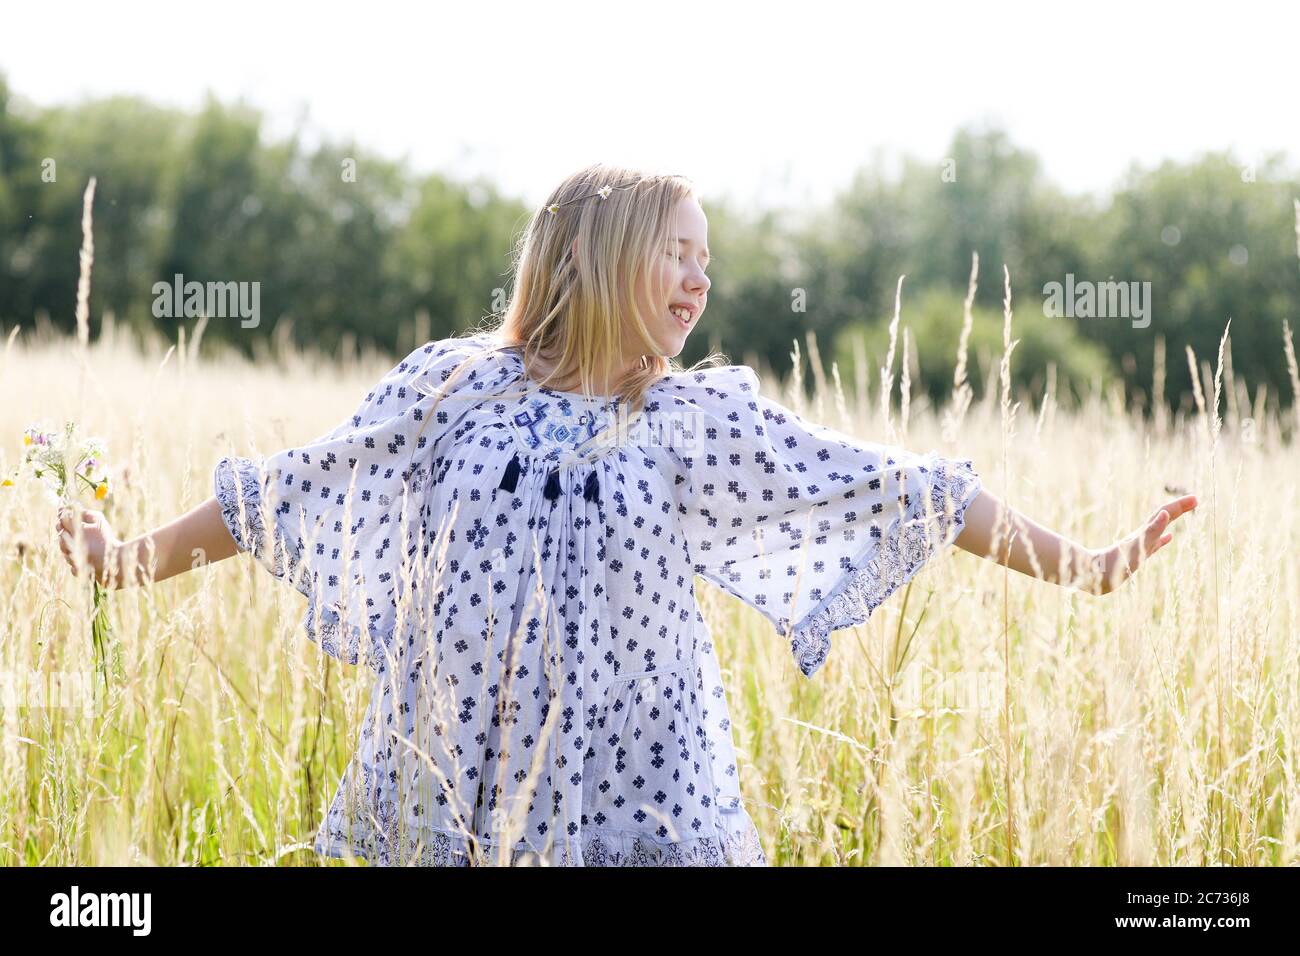 Una giovane ragazza hippy graziosa con catena daisy in capelli biondi tiene un poy di fiori selvatici con le braccia estese n un campo di pascolo in estate. Foto Stock